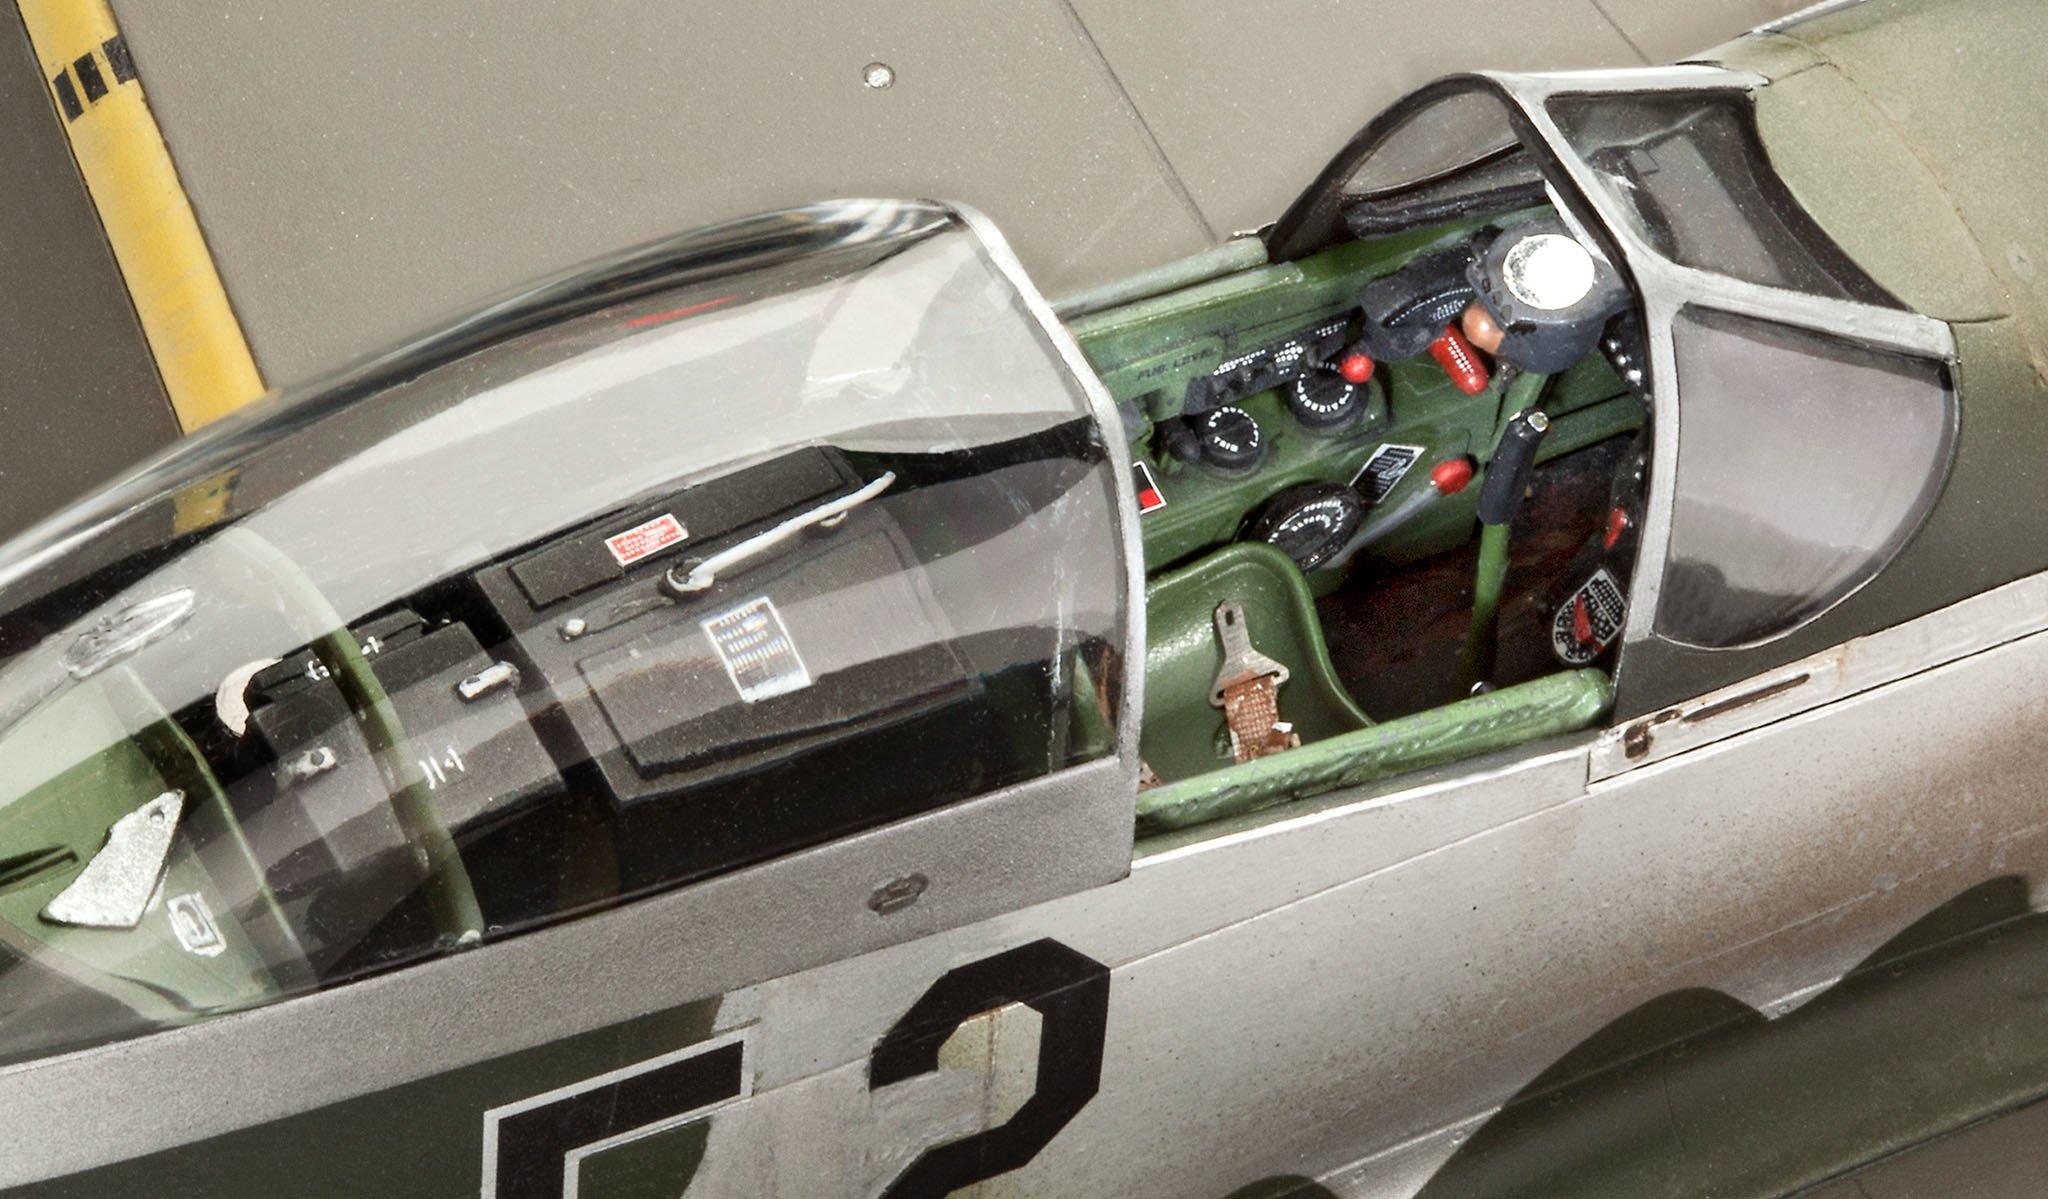 Revell  Revell P-51D Mustang Modello di aereo ad ala fissa Kit di montaggio 1:32 